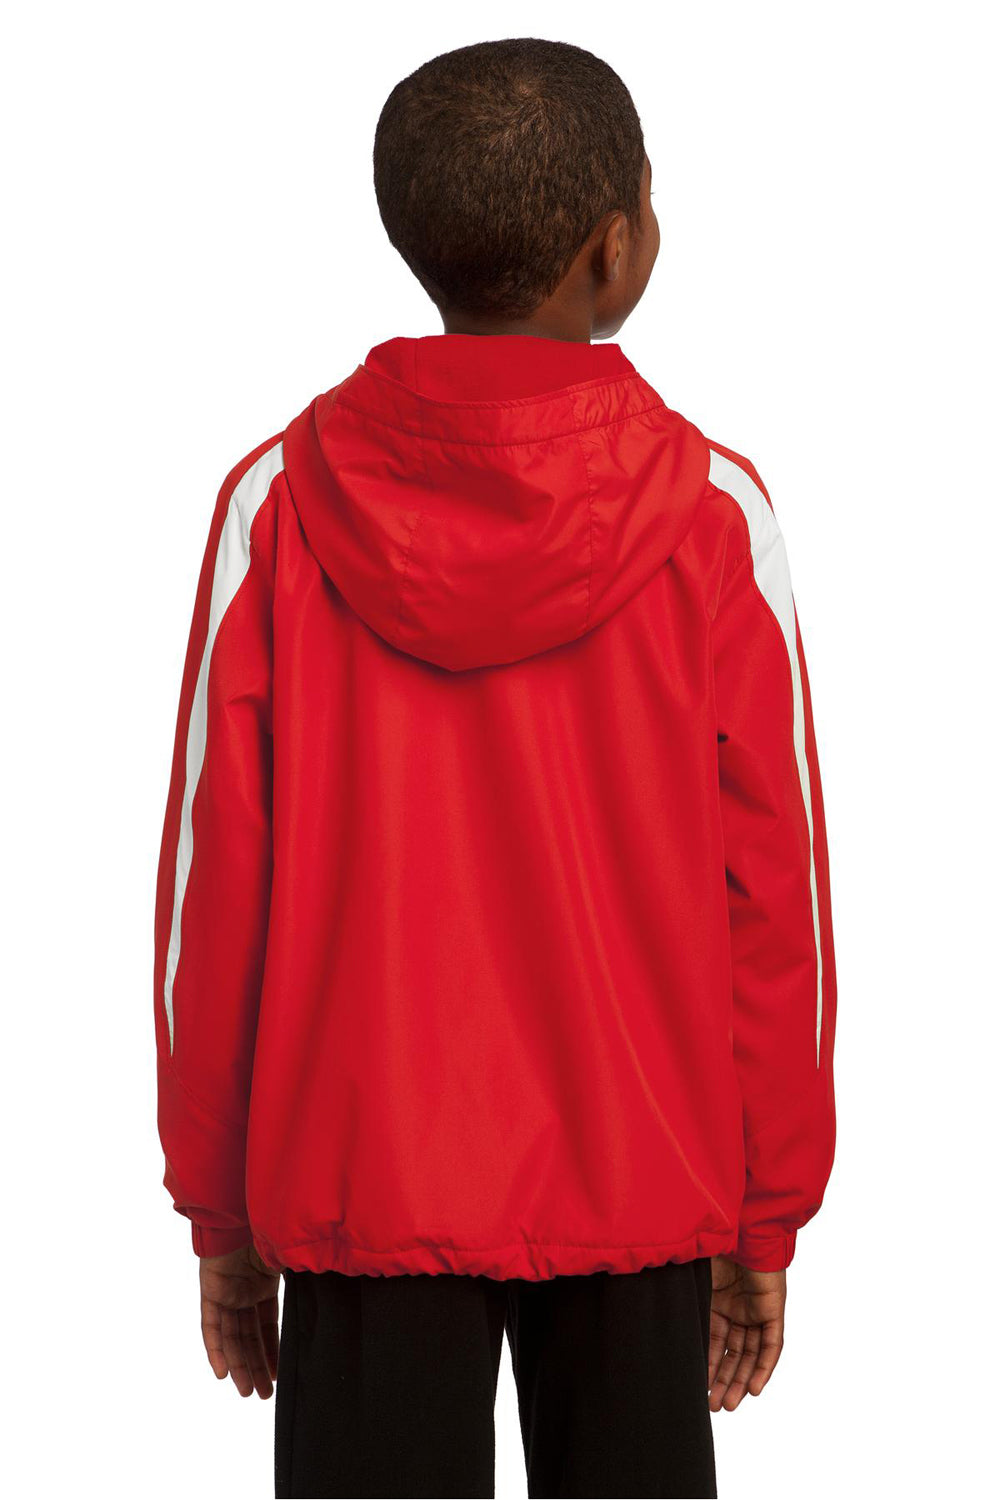 Sport-Tek YST81 Youth Full Zip Hooded Jacket Red Back